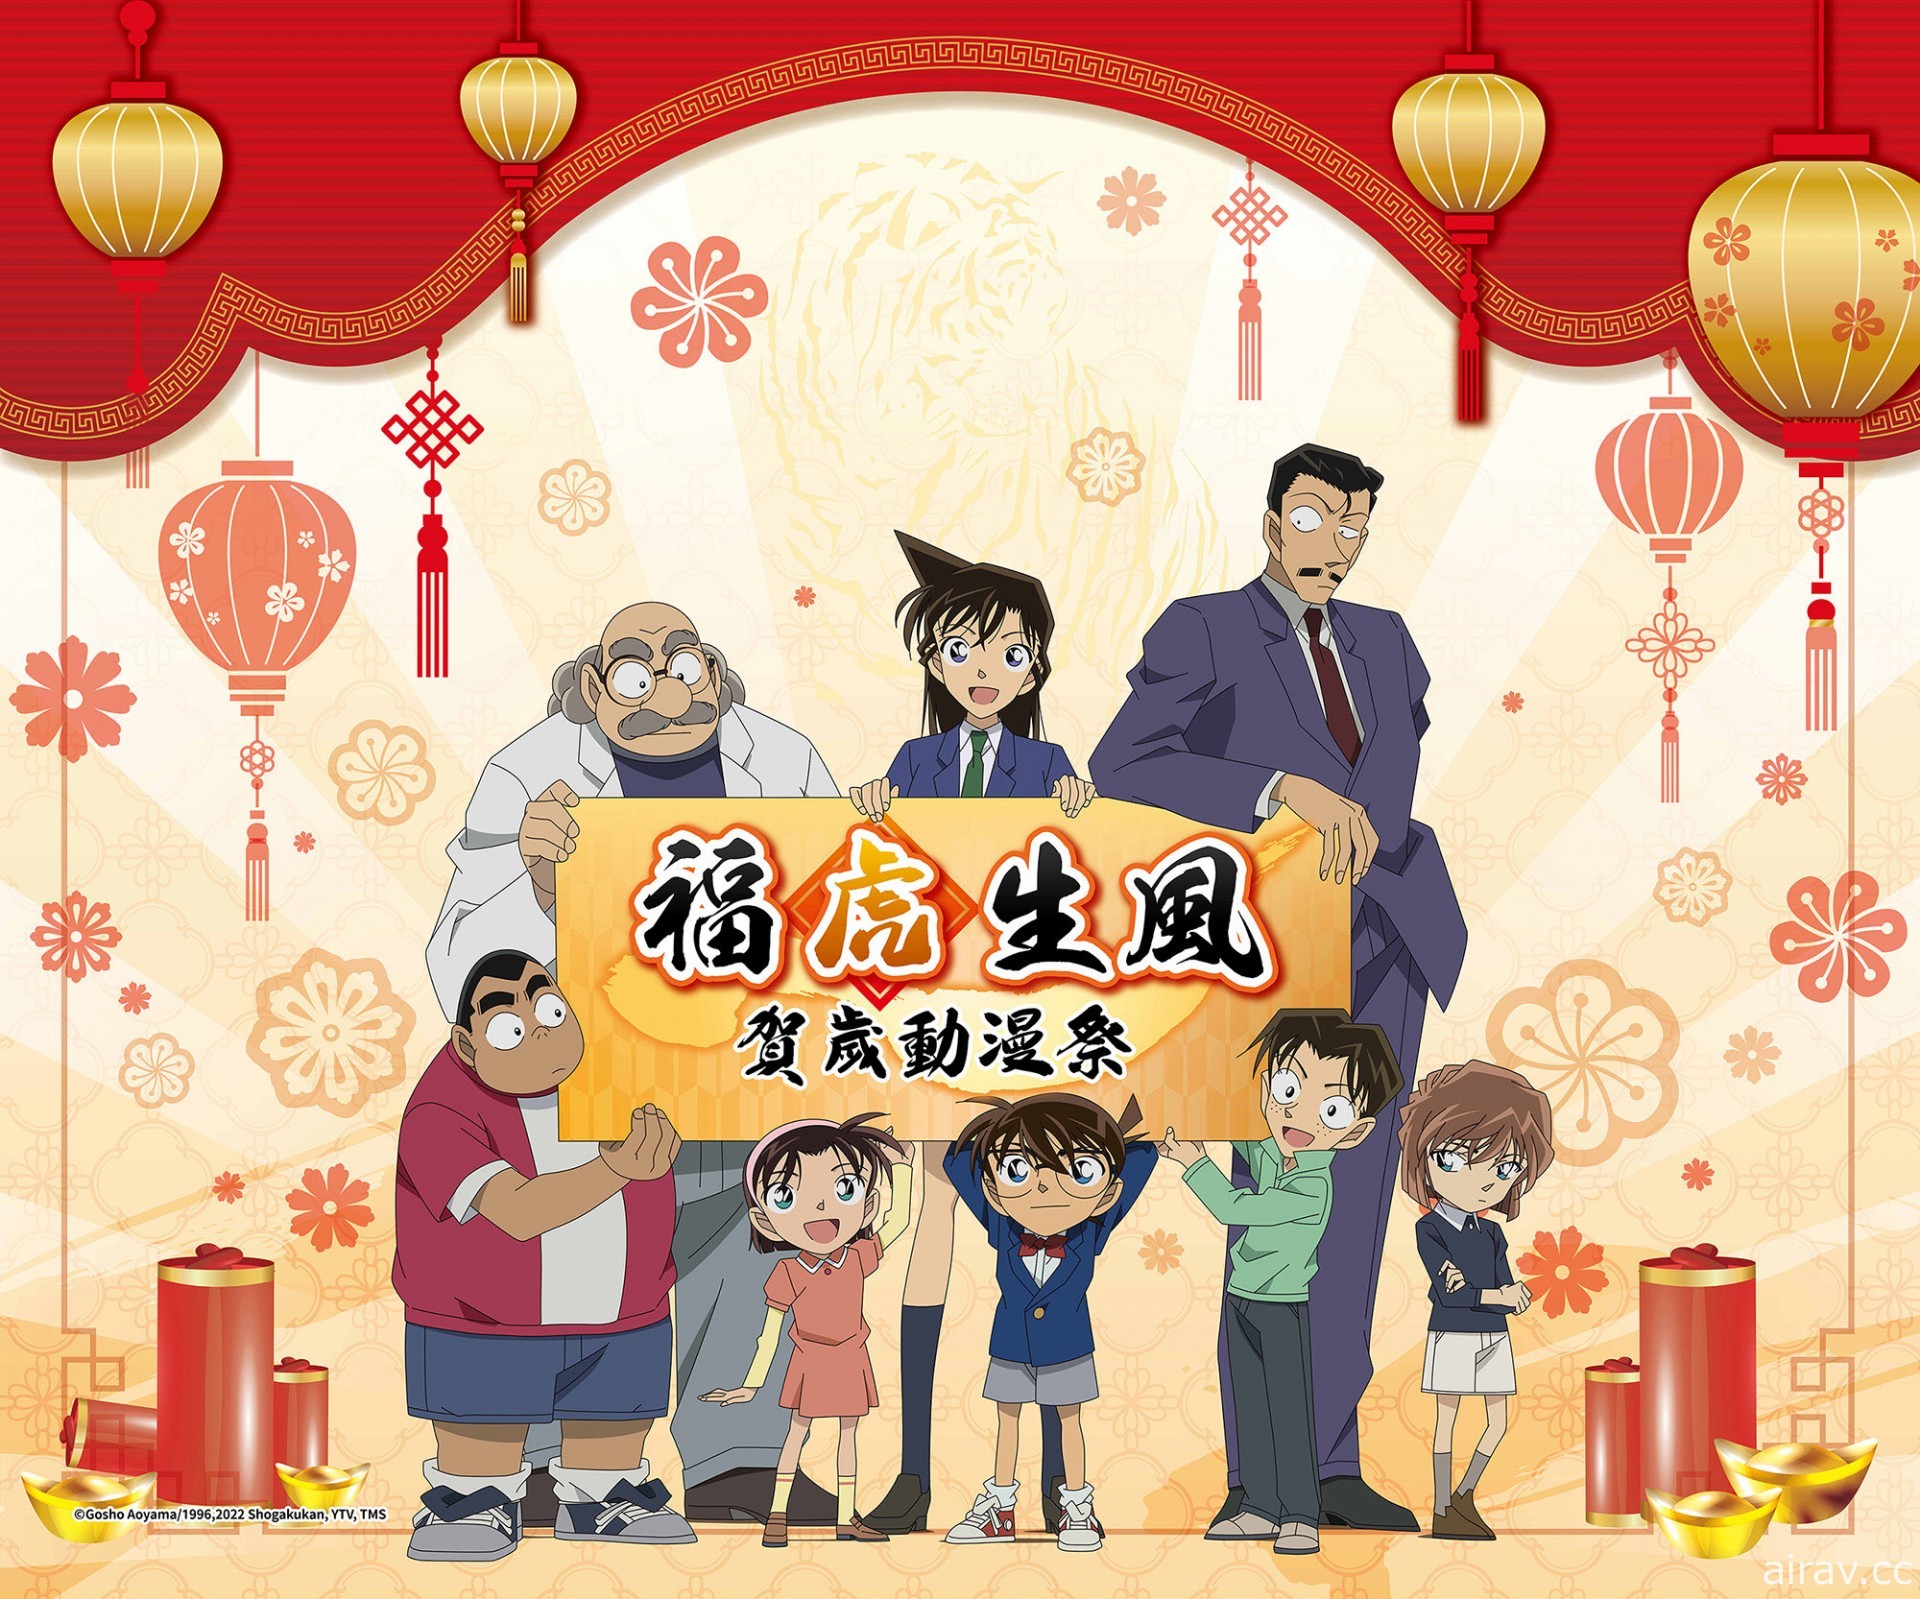 曼迪將自 1 月 7 日起於台北信義 A8 推出「福虎生風賀歲動漫祭」